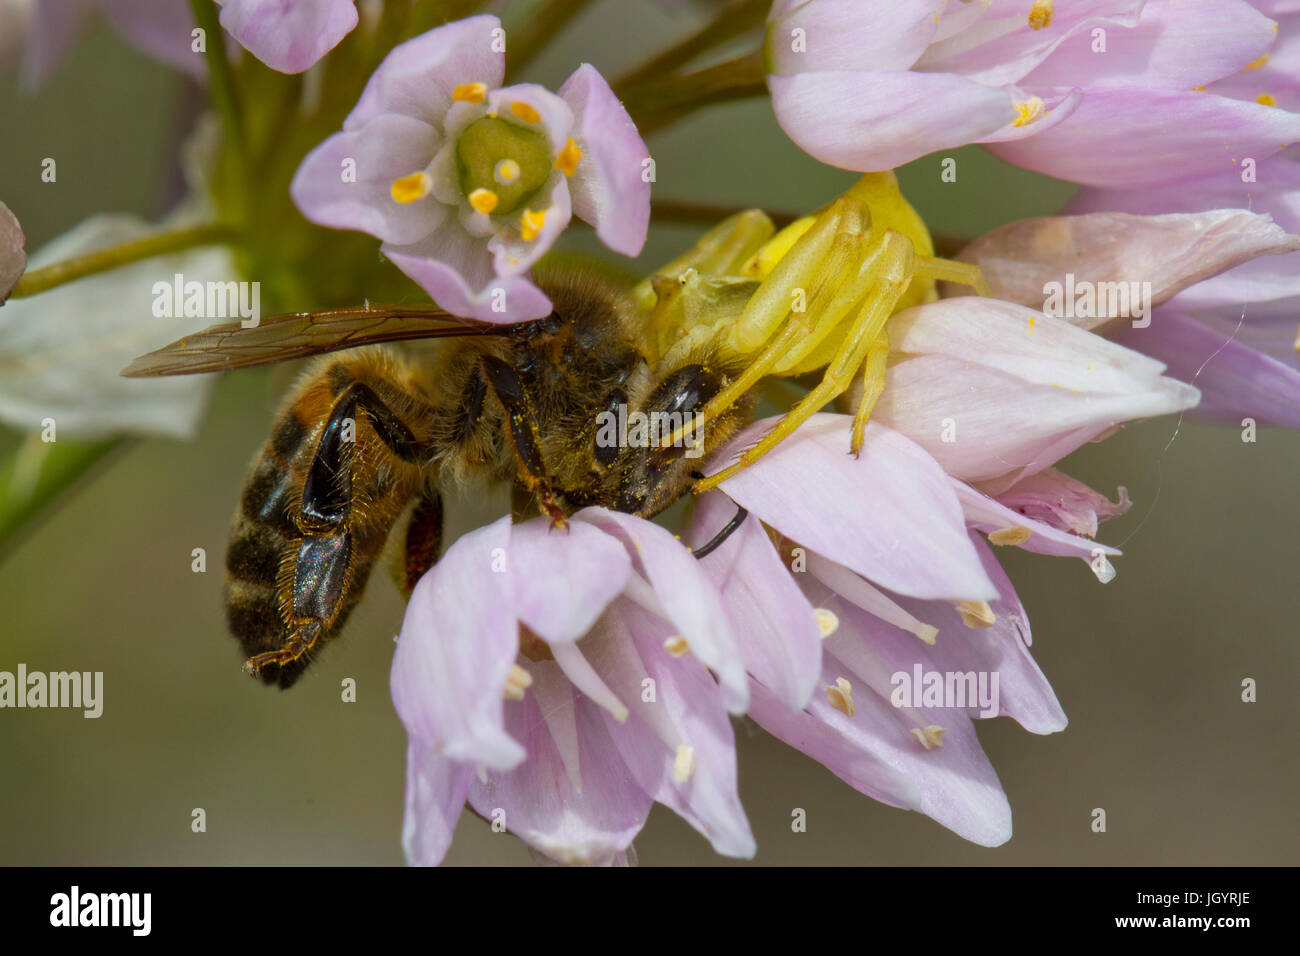 Krabben Sie-Spinne Fütterung auf eine Honigbiene (Apis Mellifera) unter rosa Knoblauch (Allium Roseum) Blumen. Chaîne des Alpilles, Bouches-du-Rhône, Frankreich. Mai. Stockfoto